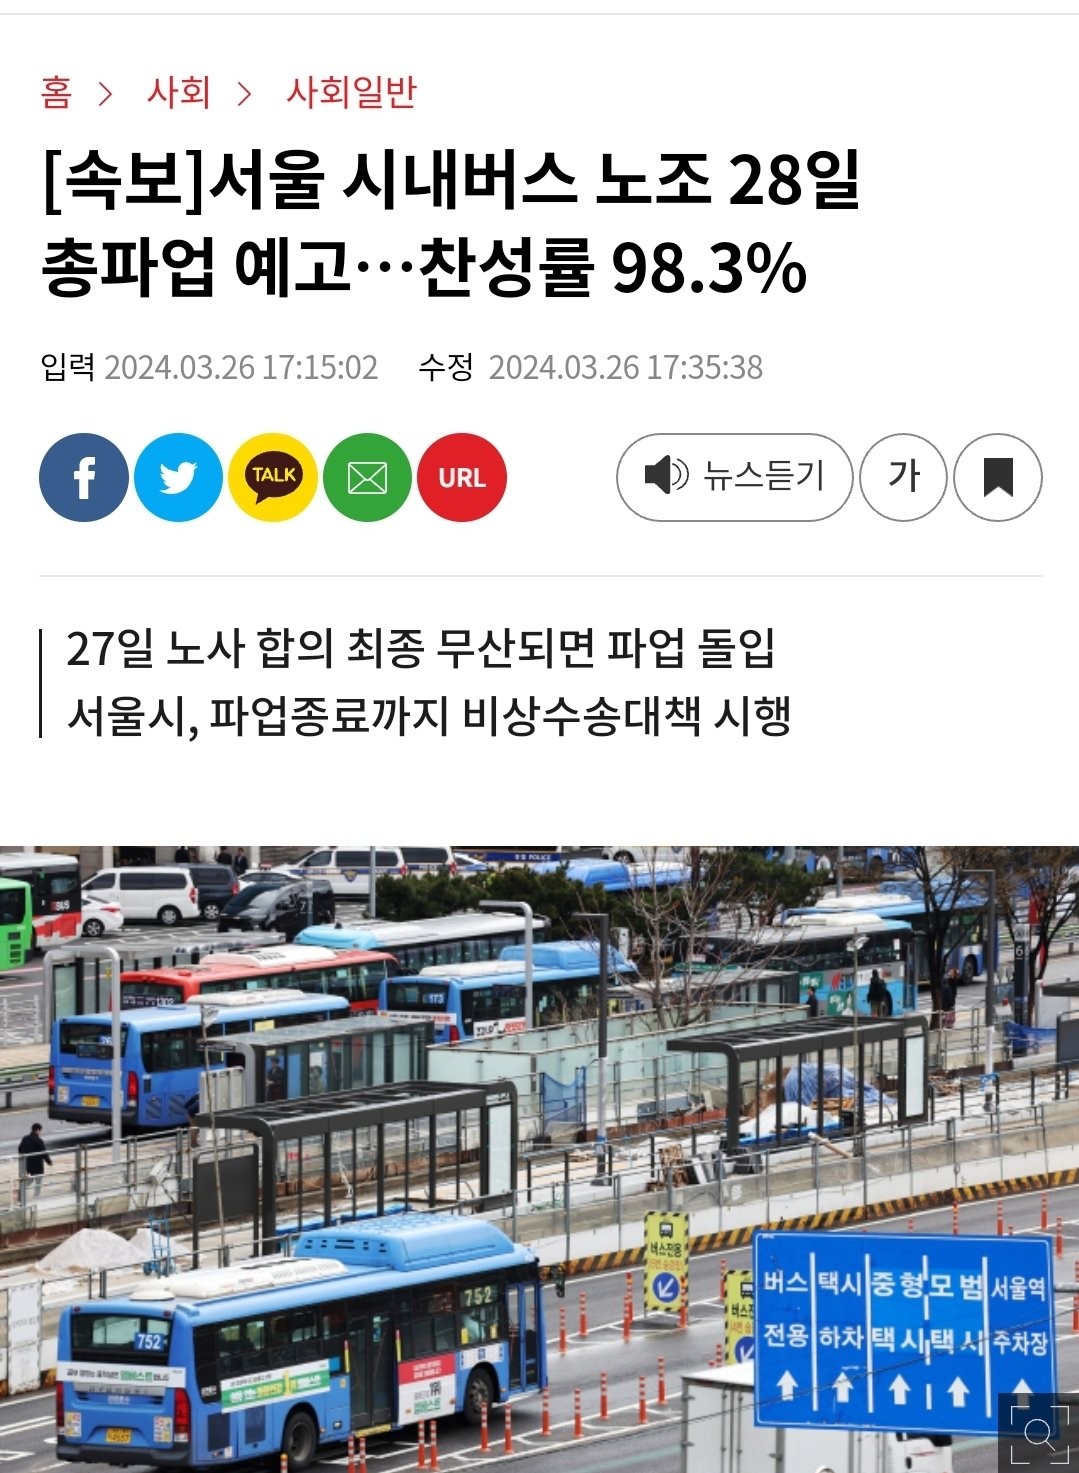 [속보] 서울 시내버스 노조 28일 총파업 찬성률 98.3%